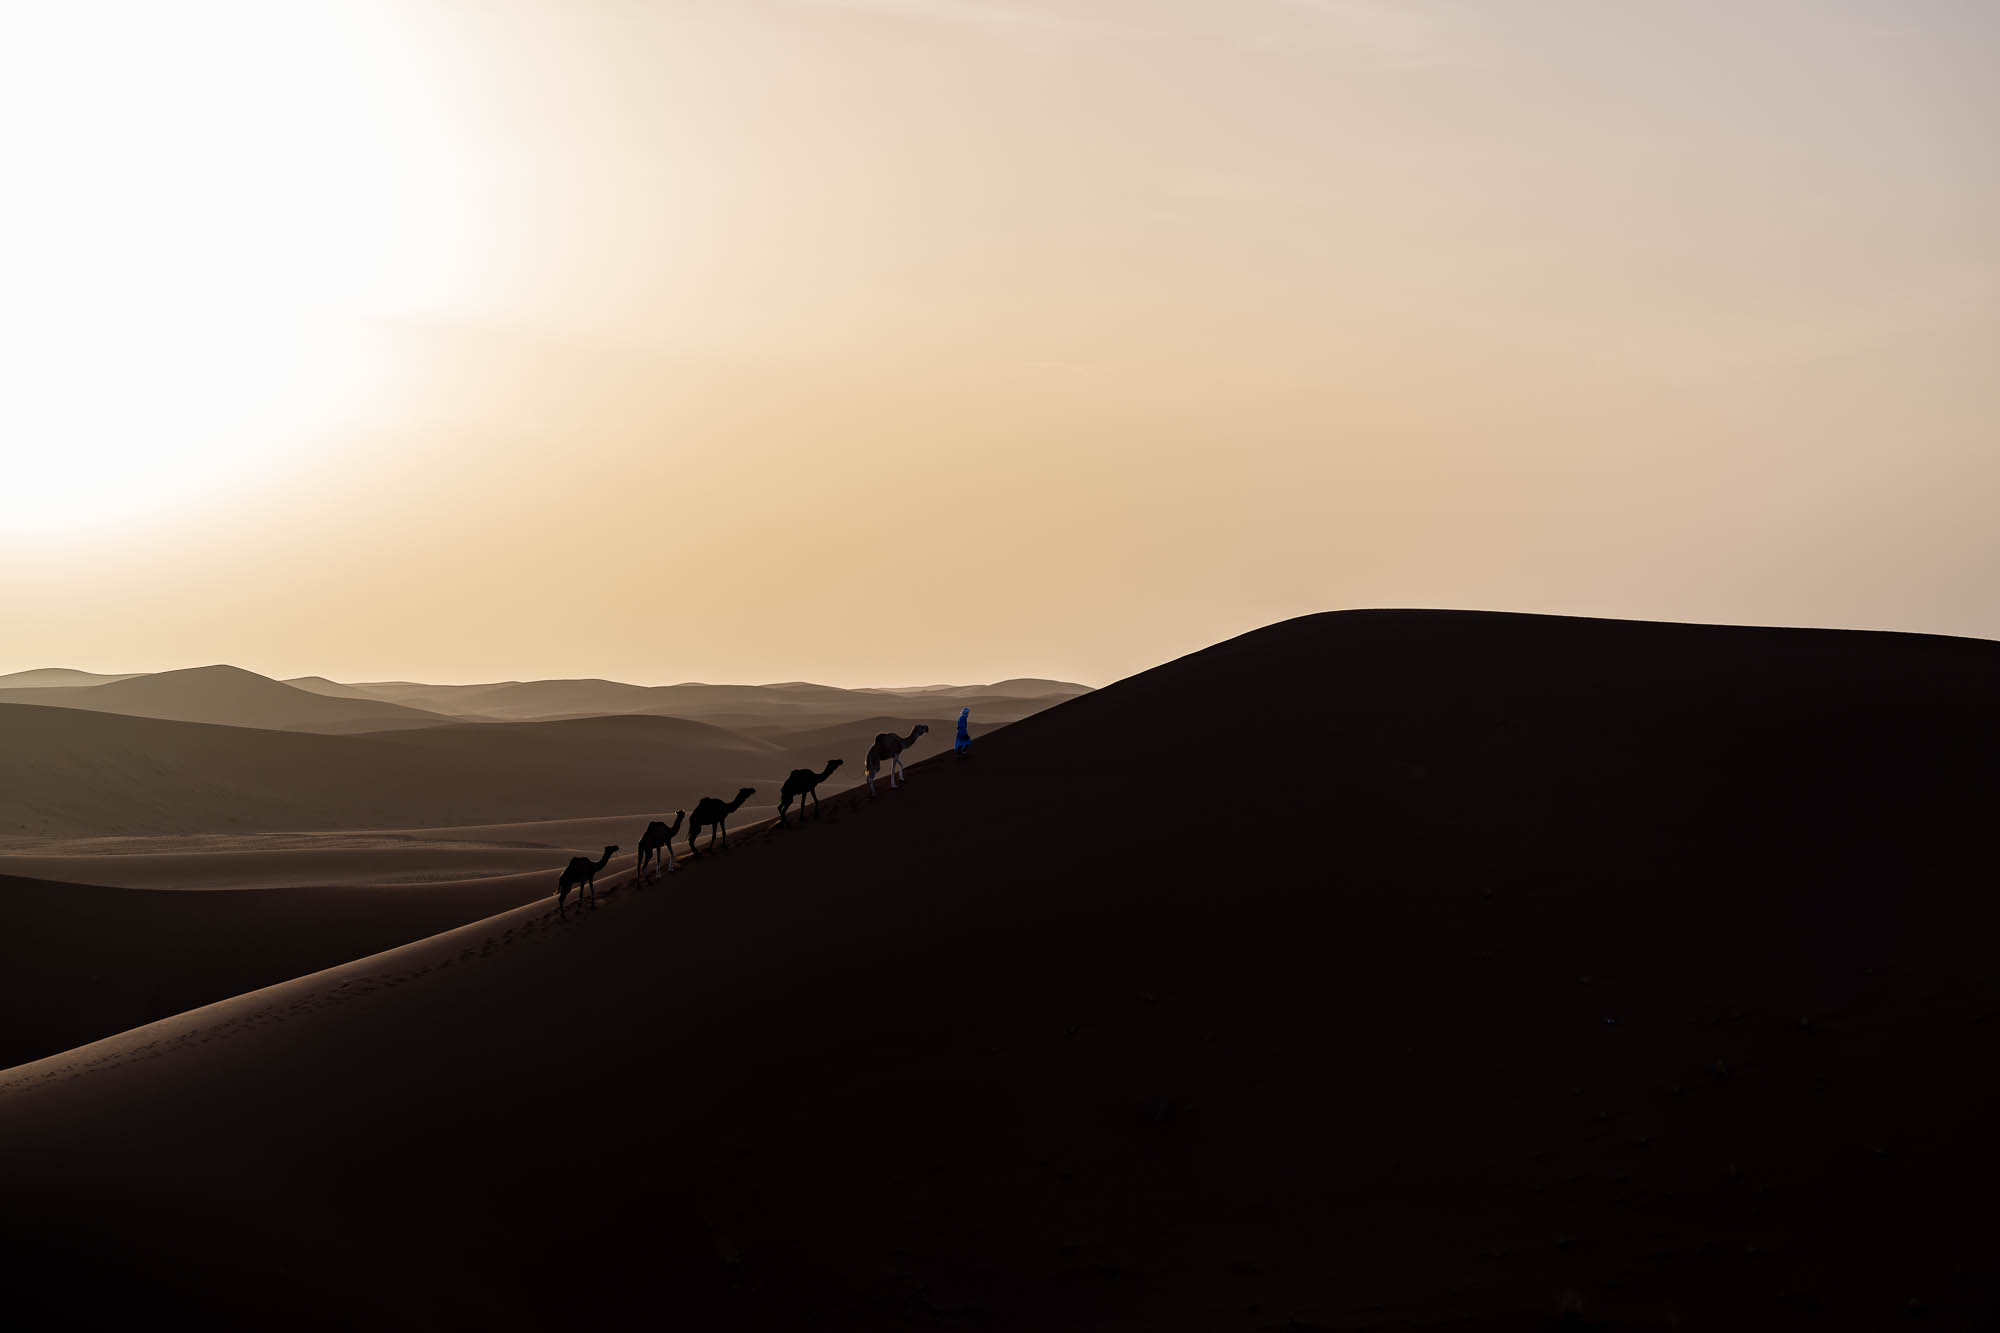 caravane chamelière lors d'un voyage photographique dans le désert du Sahara au Maroc